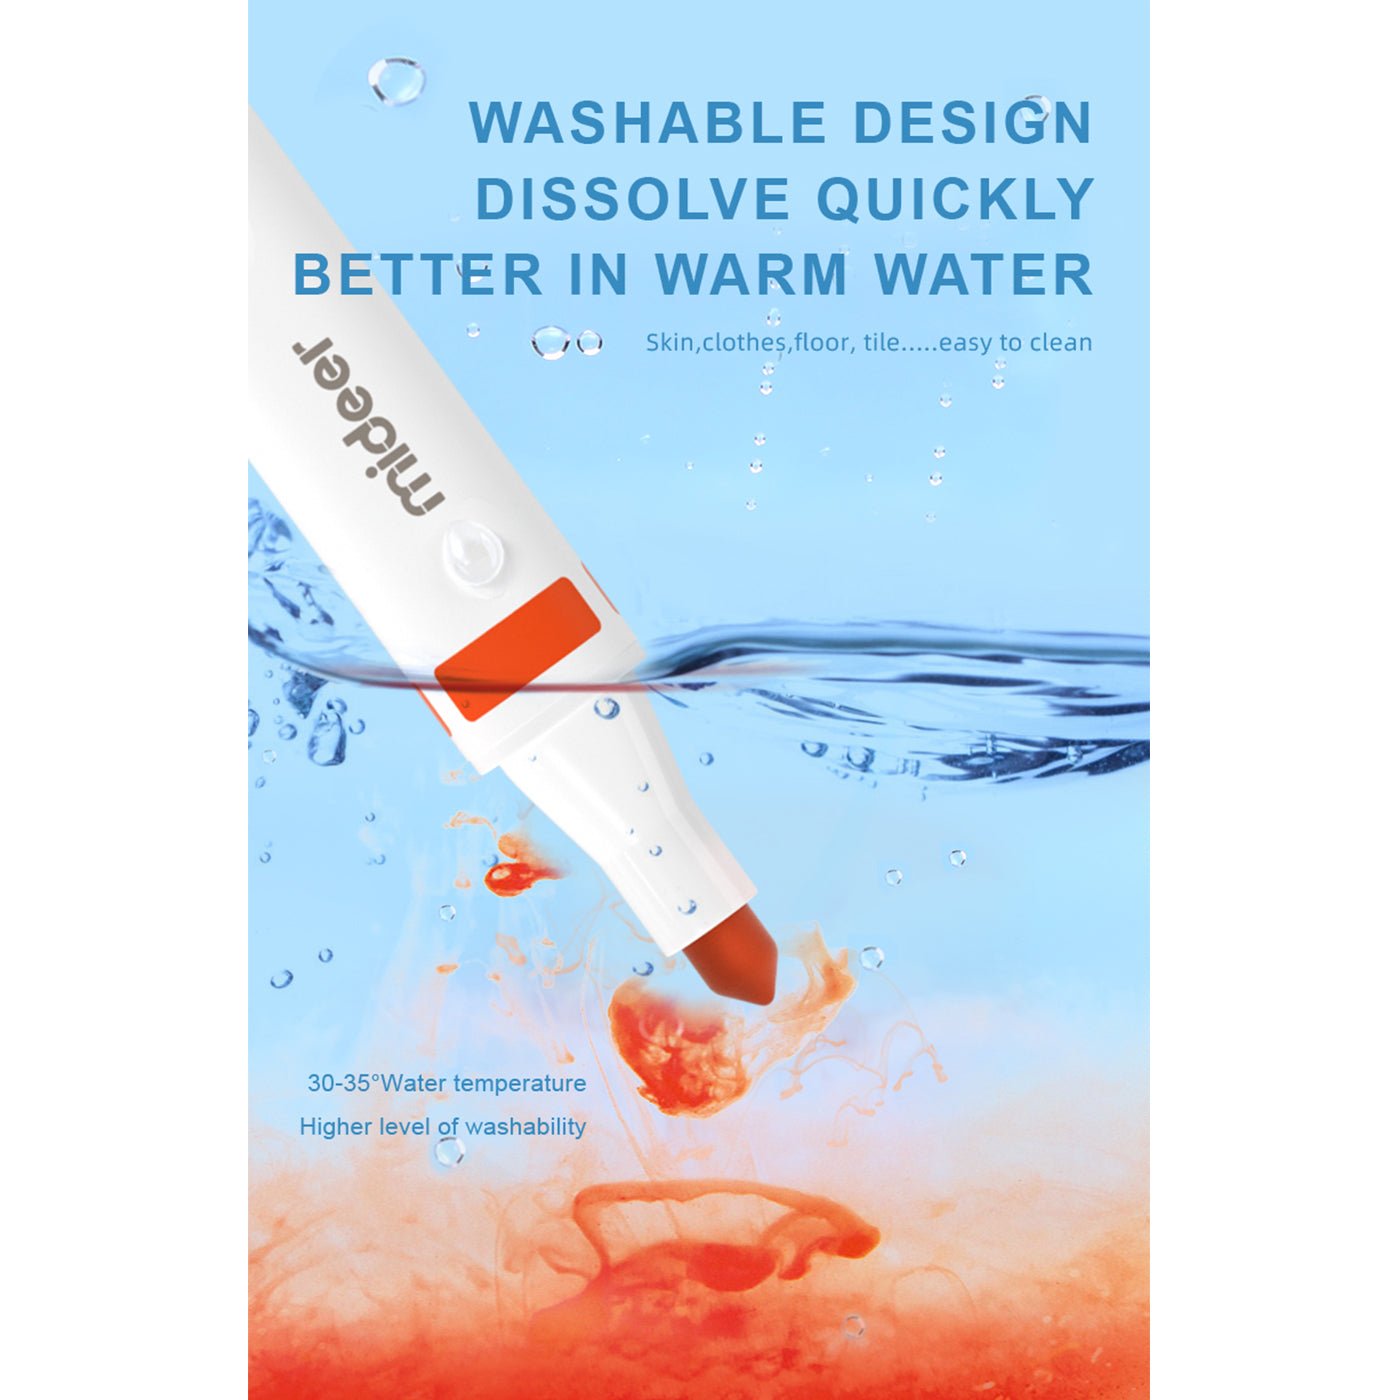 Washable Marker 3 Colors - 0cm